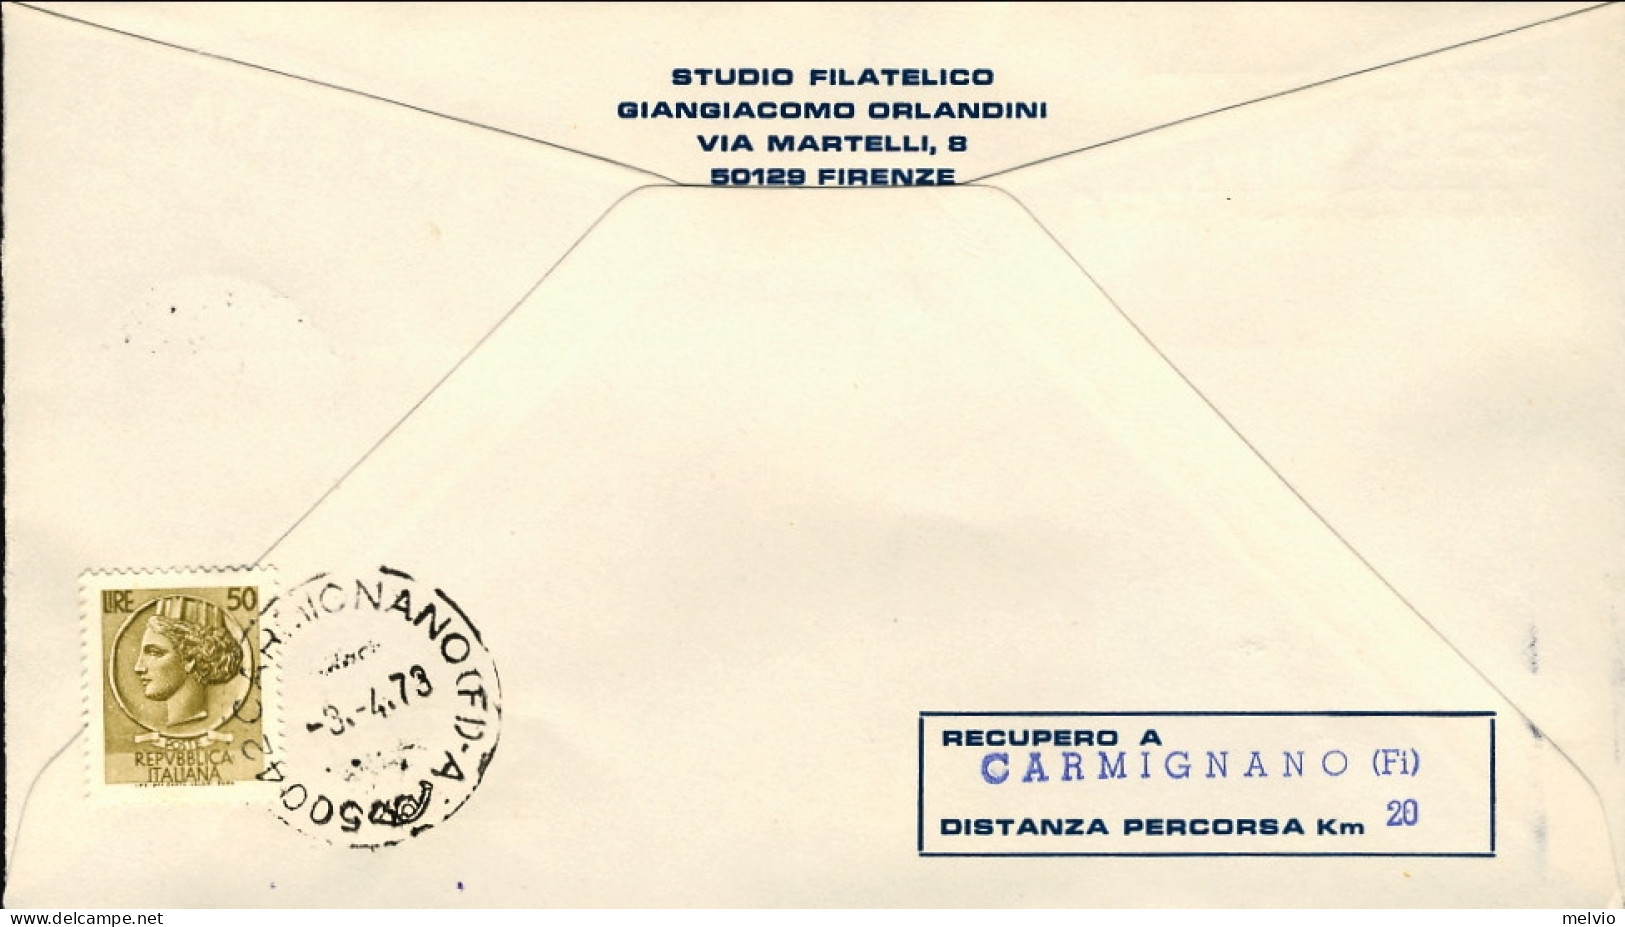 Vaticano-1974 Trasportato Con Mongolfiera Lancio Da Prato Lancio Rinviato Al 1 A - Aéreo